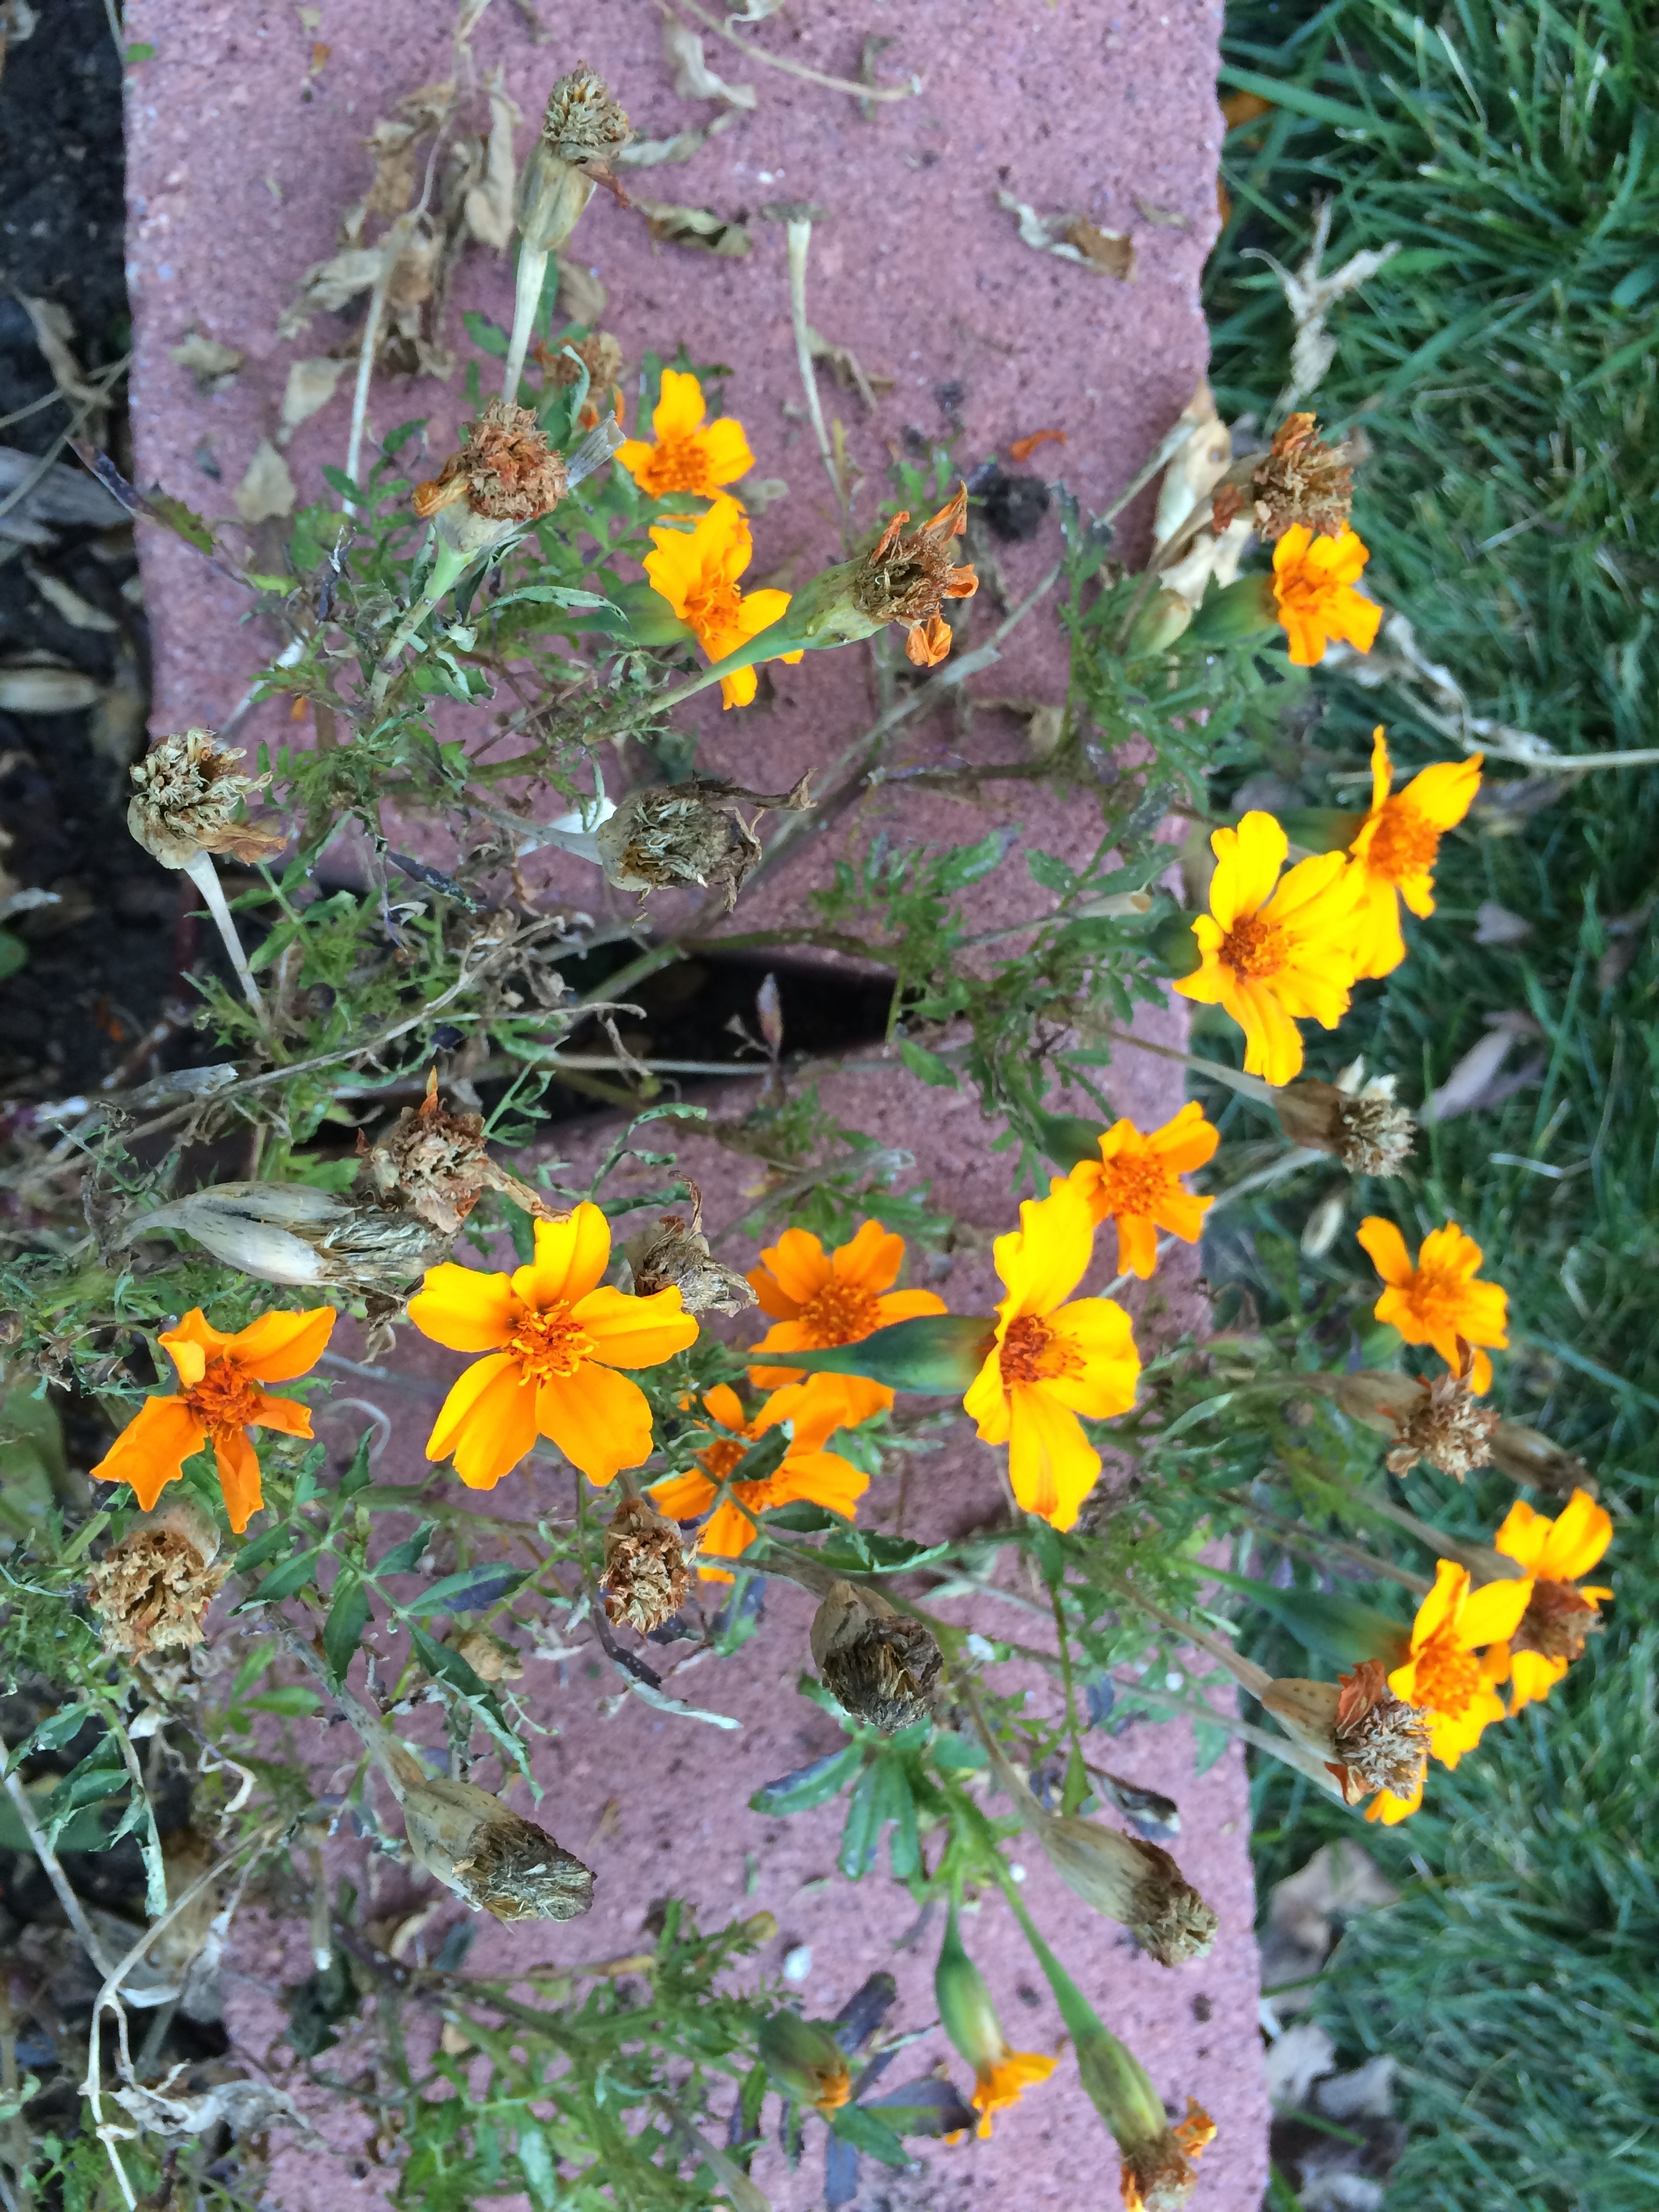 marigolds along the garden border